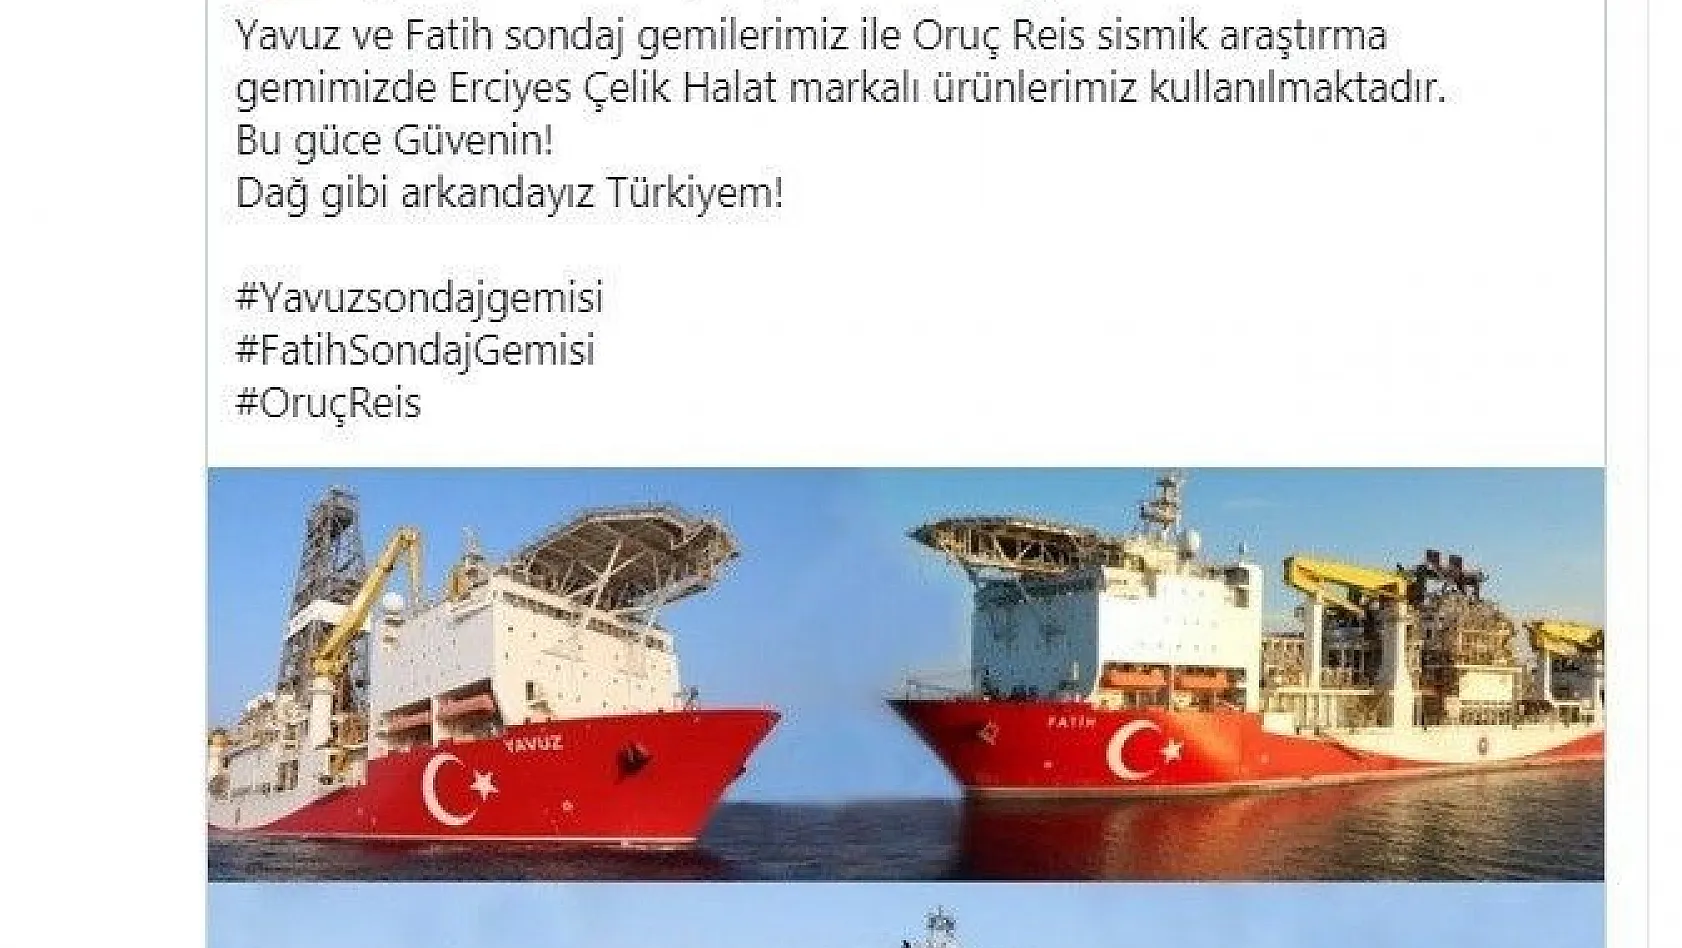 Yavuz, Fatih ve Oruç Reis gemilerinde Erciyes Çelik Halatları Kullanılıyor
